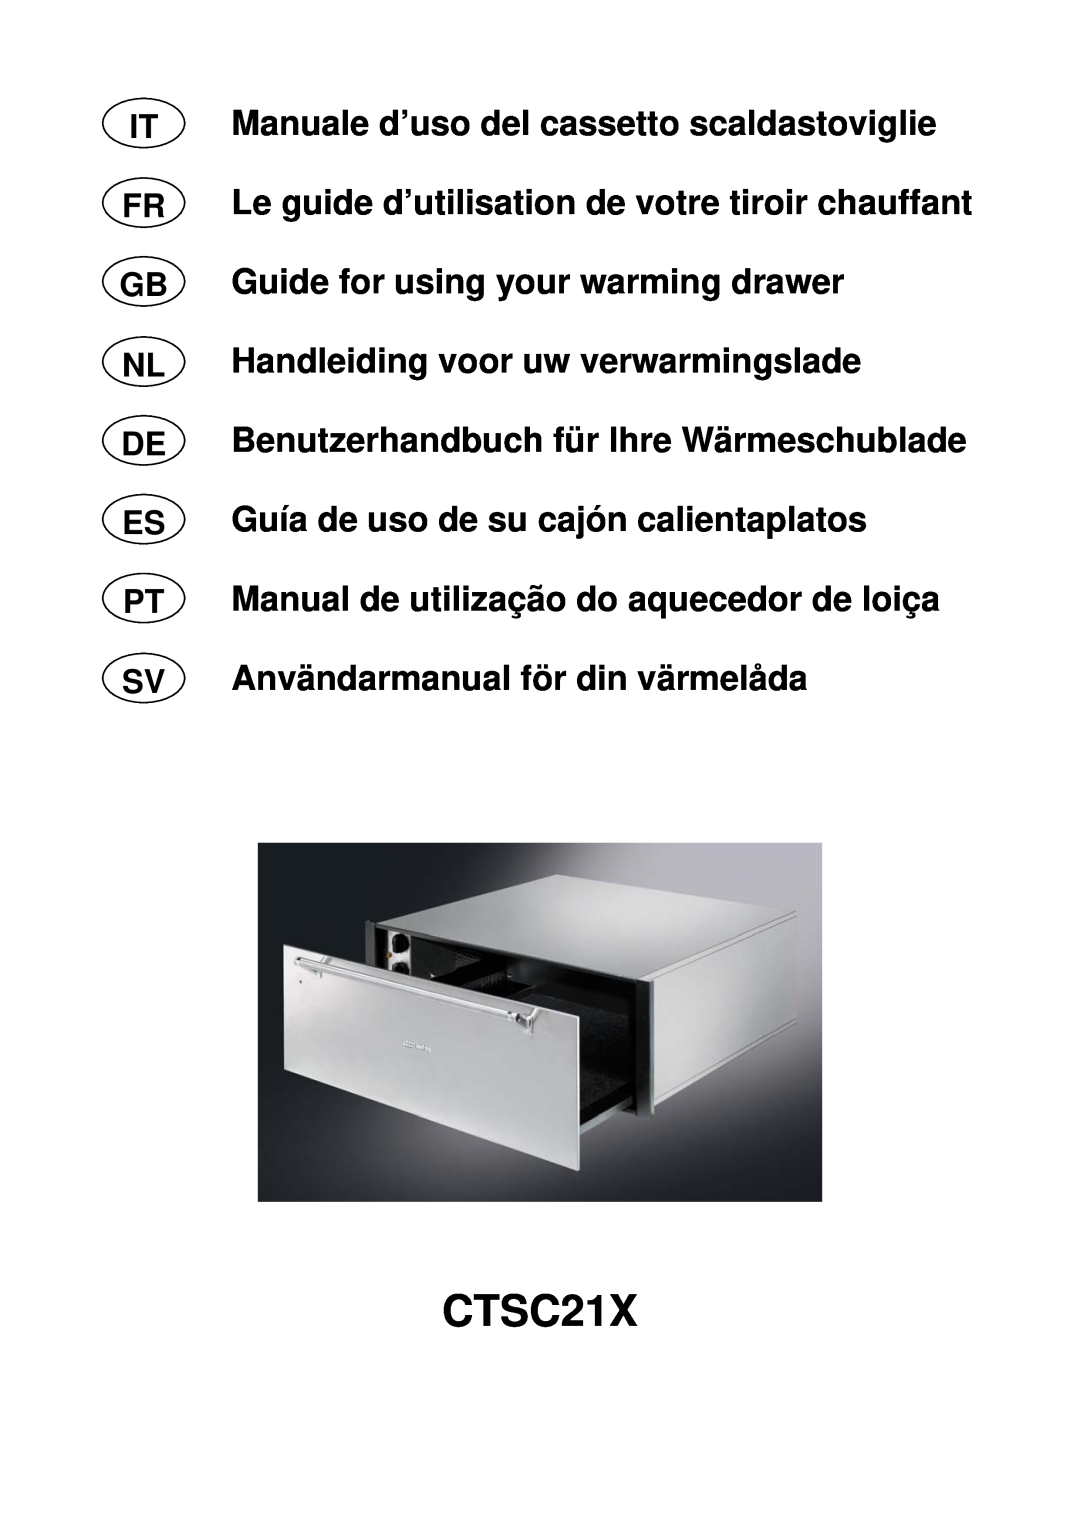 Smeg CTSC21X manual Manuale d’uso del cassetto scaldastoviglie, Le guide d’utilisation de votre tiroir chauffant 